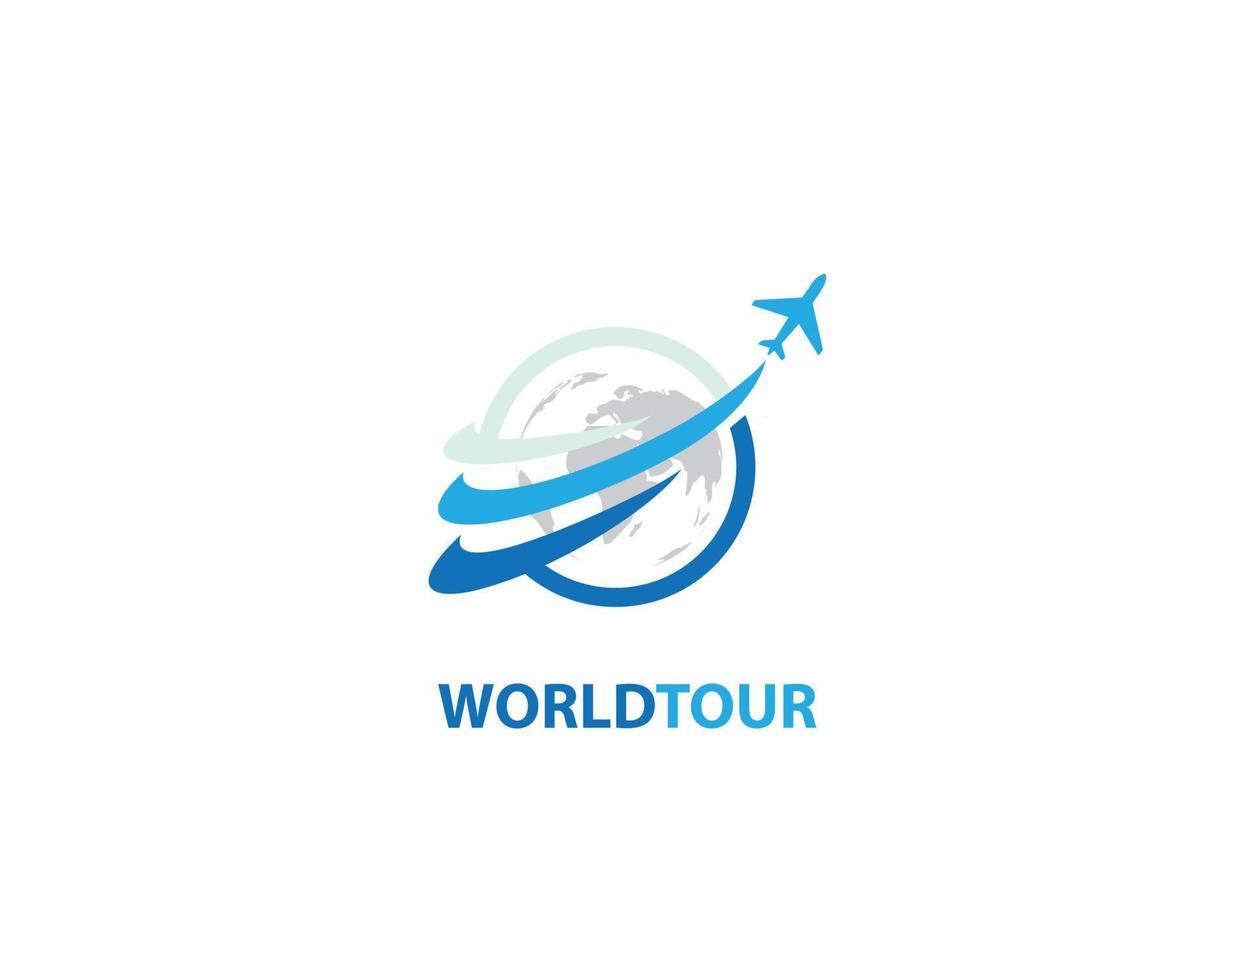 World tour logo design vector